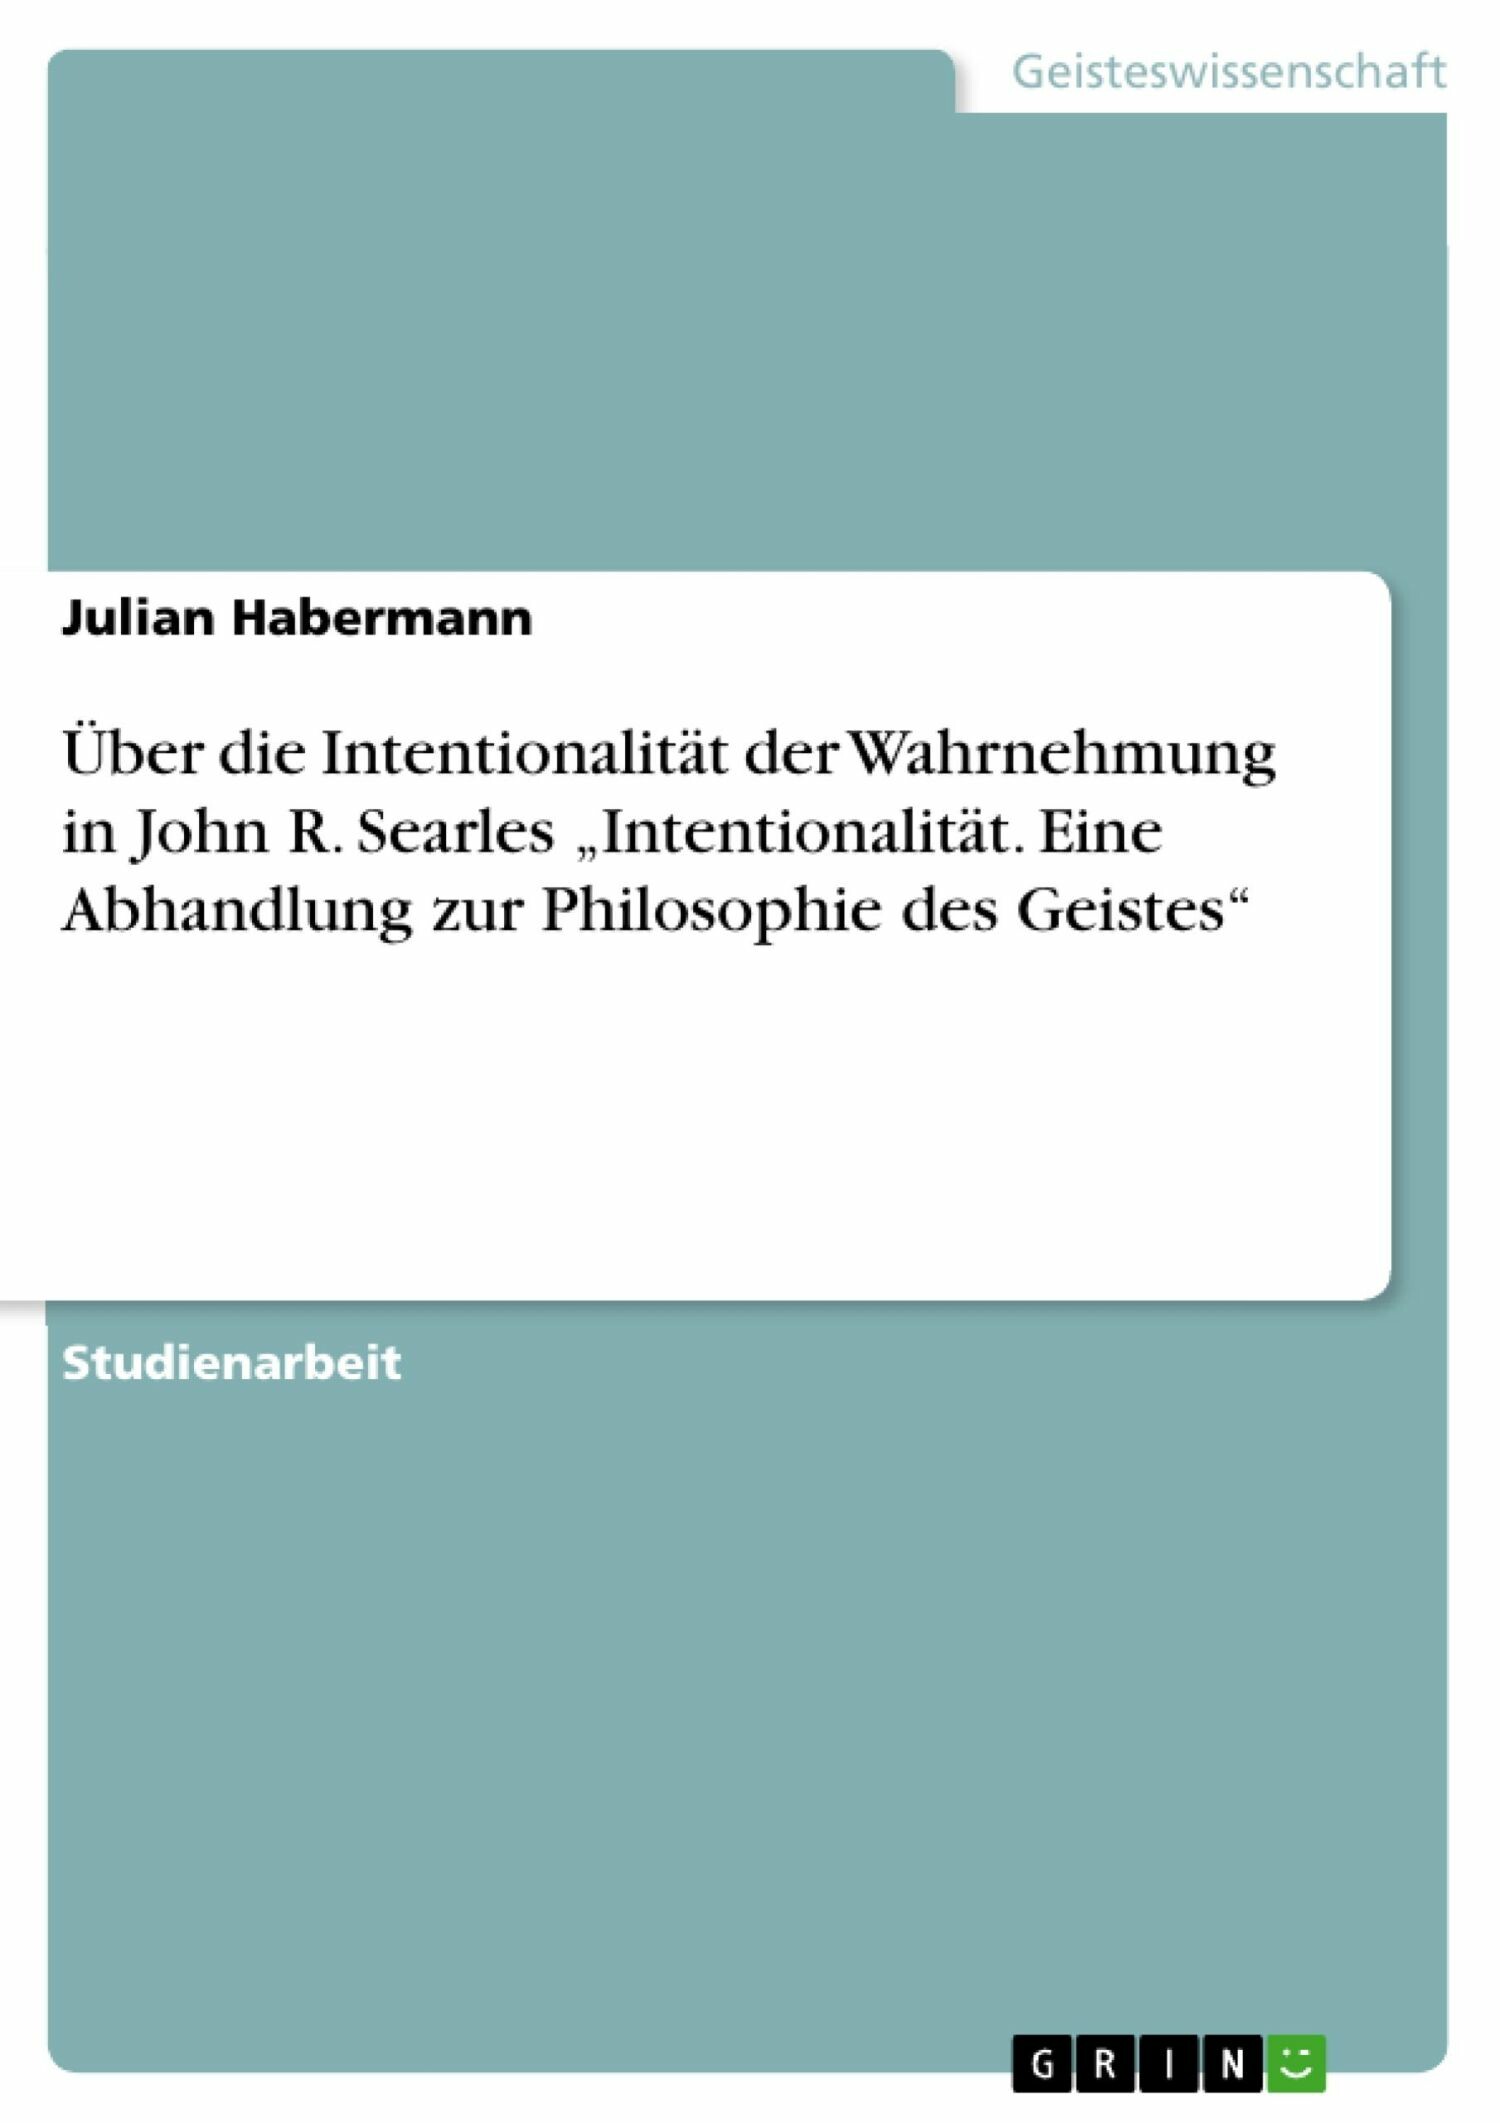 Über die Intentionalität der Wahrnehmung in John R. Searles 'Intentionalität. Eine Abhandlung zur Philosophie des Geistes'